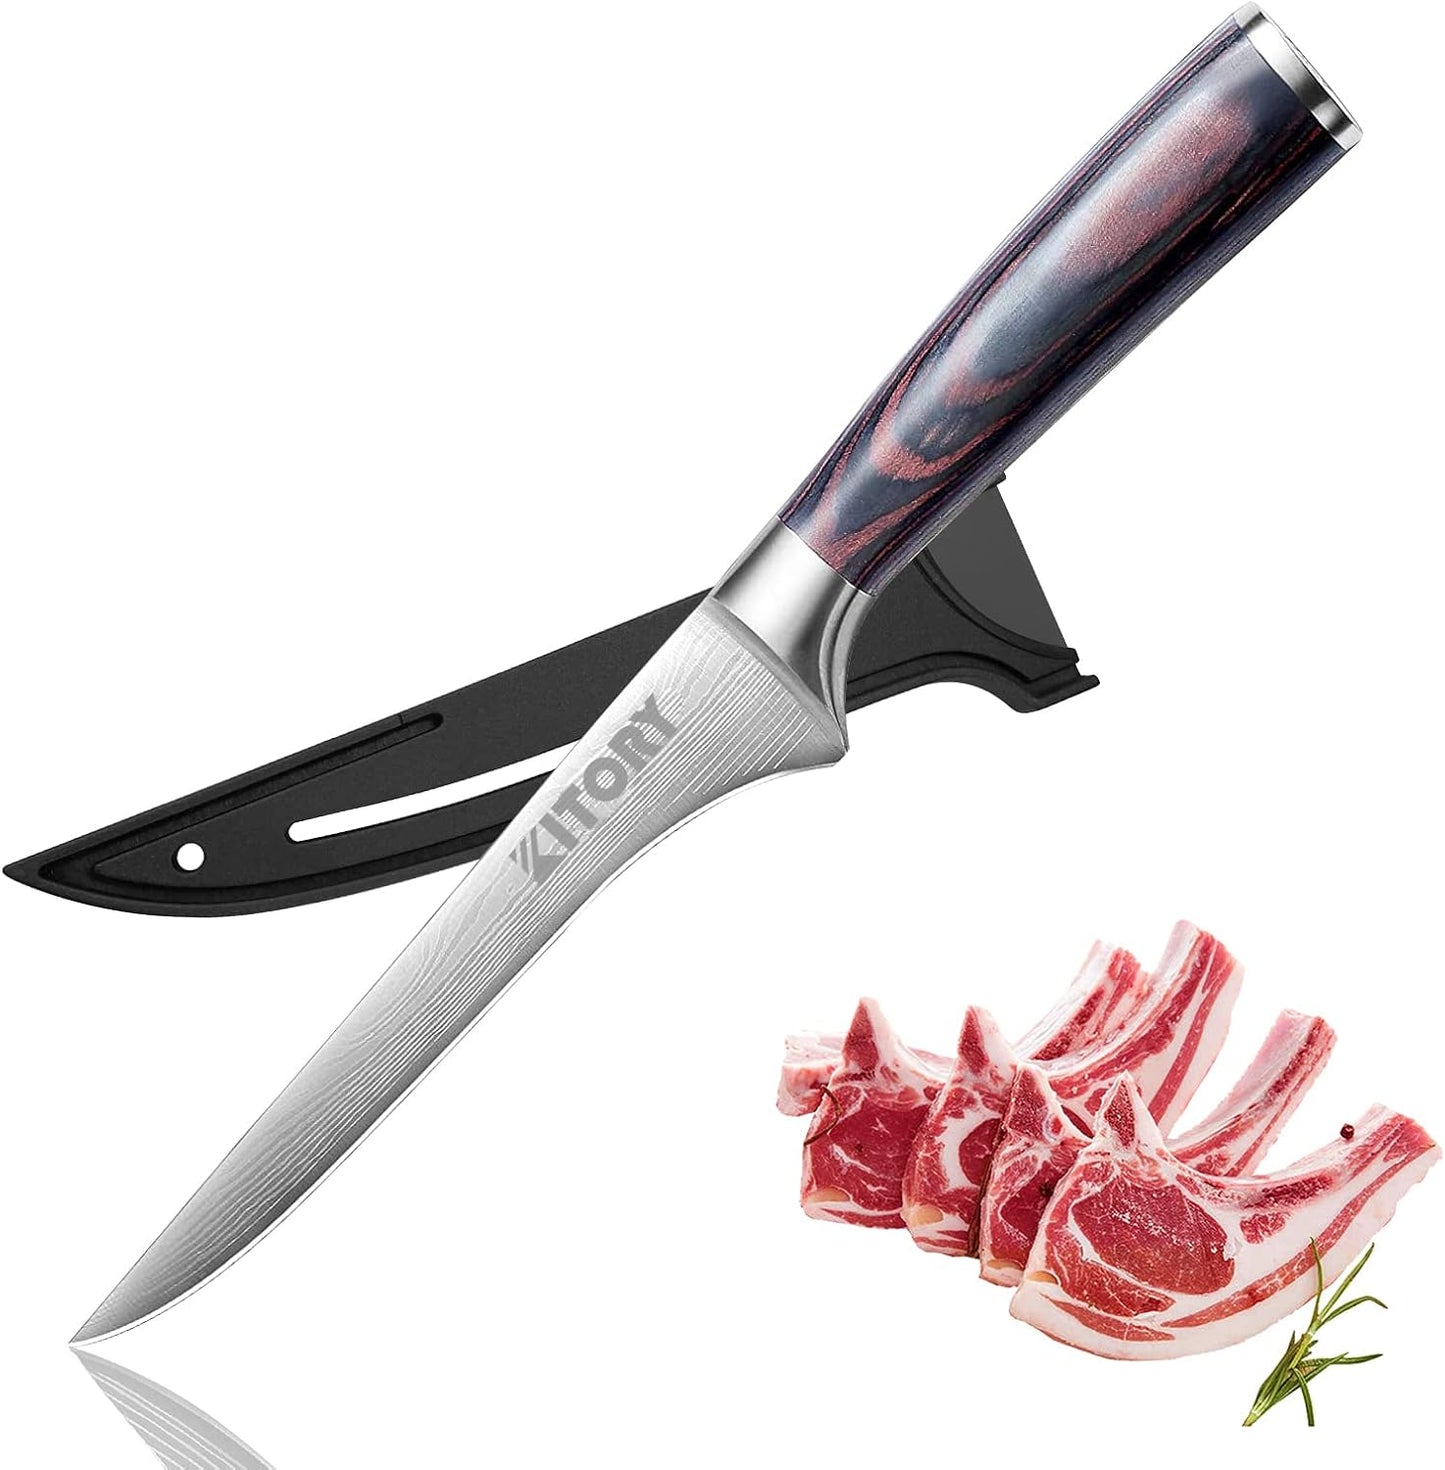 Kitory 6'' Boning Knife with Sheath